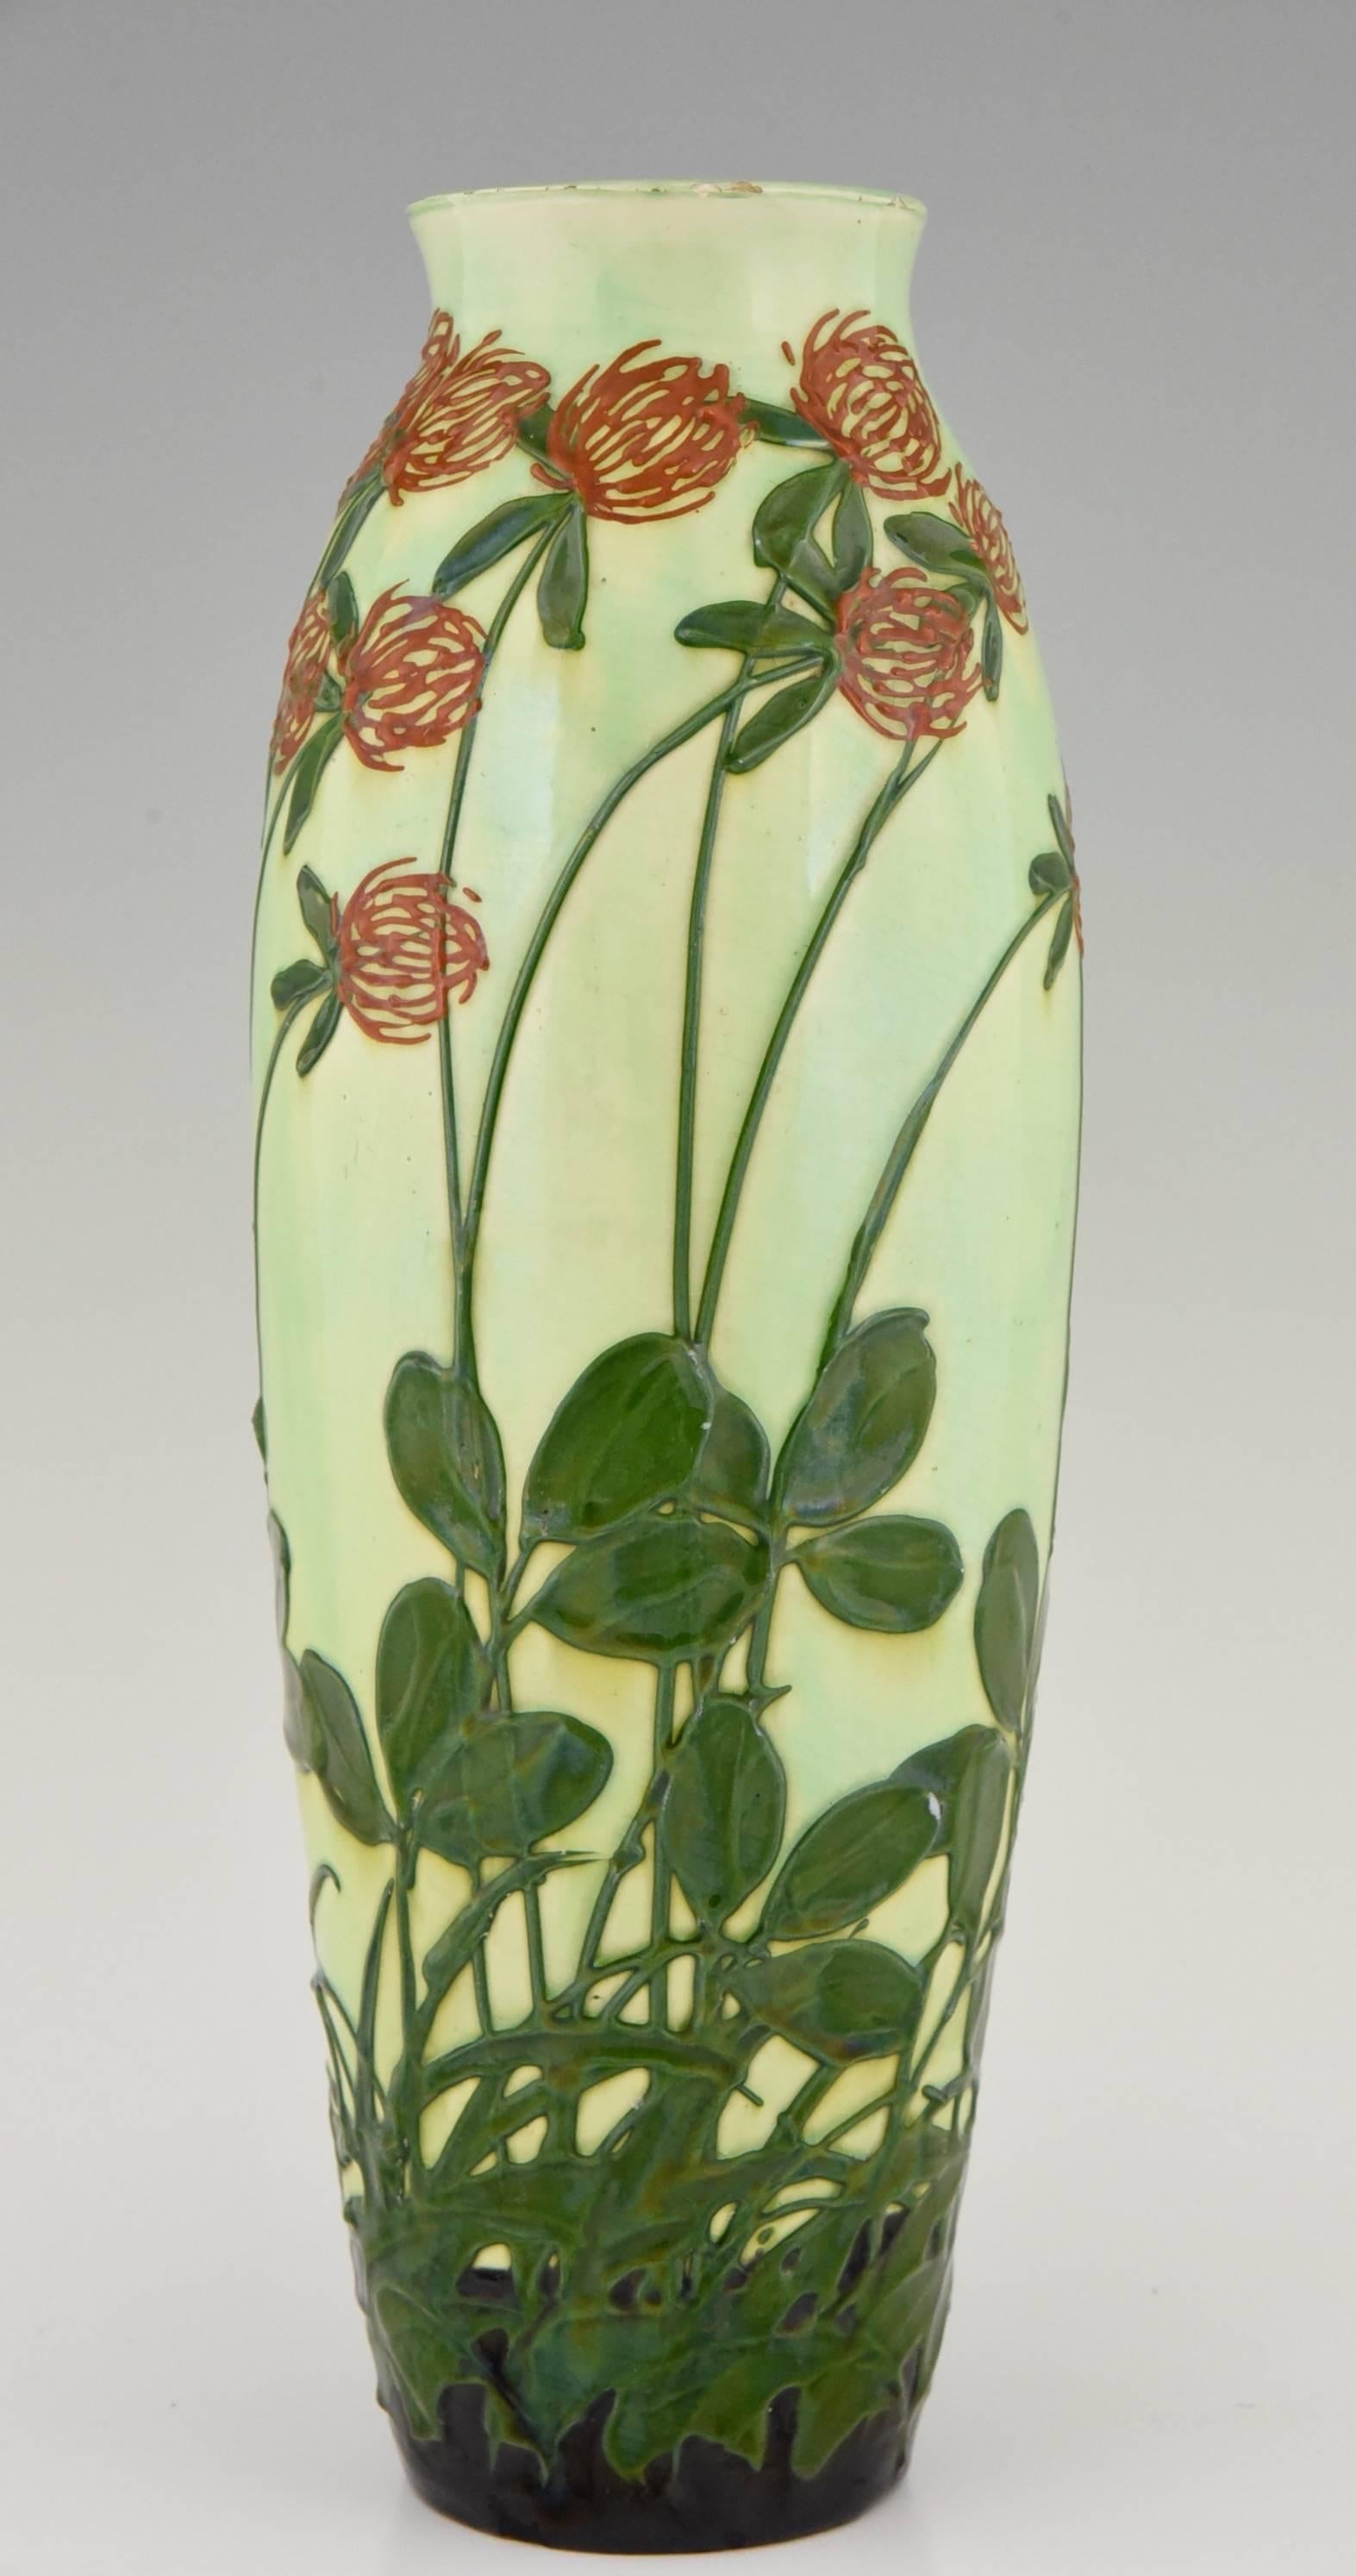 Description: 
 An Art Nouveau ceramic vase decorated with wind blown flowers. 
Maker:
Max Laeuger.
Signature / Marks:  
1. MLK Max Laeuger Kandern stamp.  
2. Nr. 106 V.
3. Muster Gesetzl. Geschützt.  
4. Gesetzl. Geschützt.  
Style: